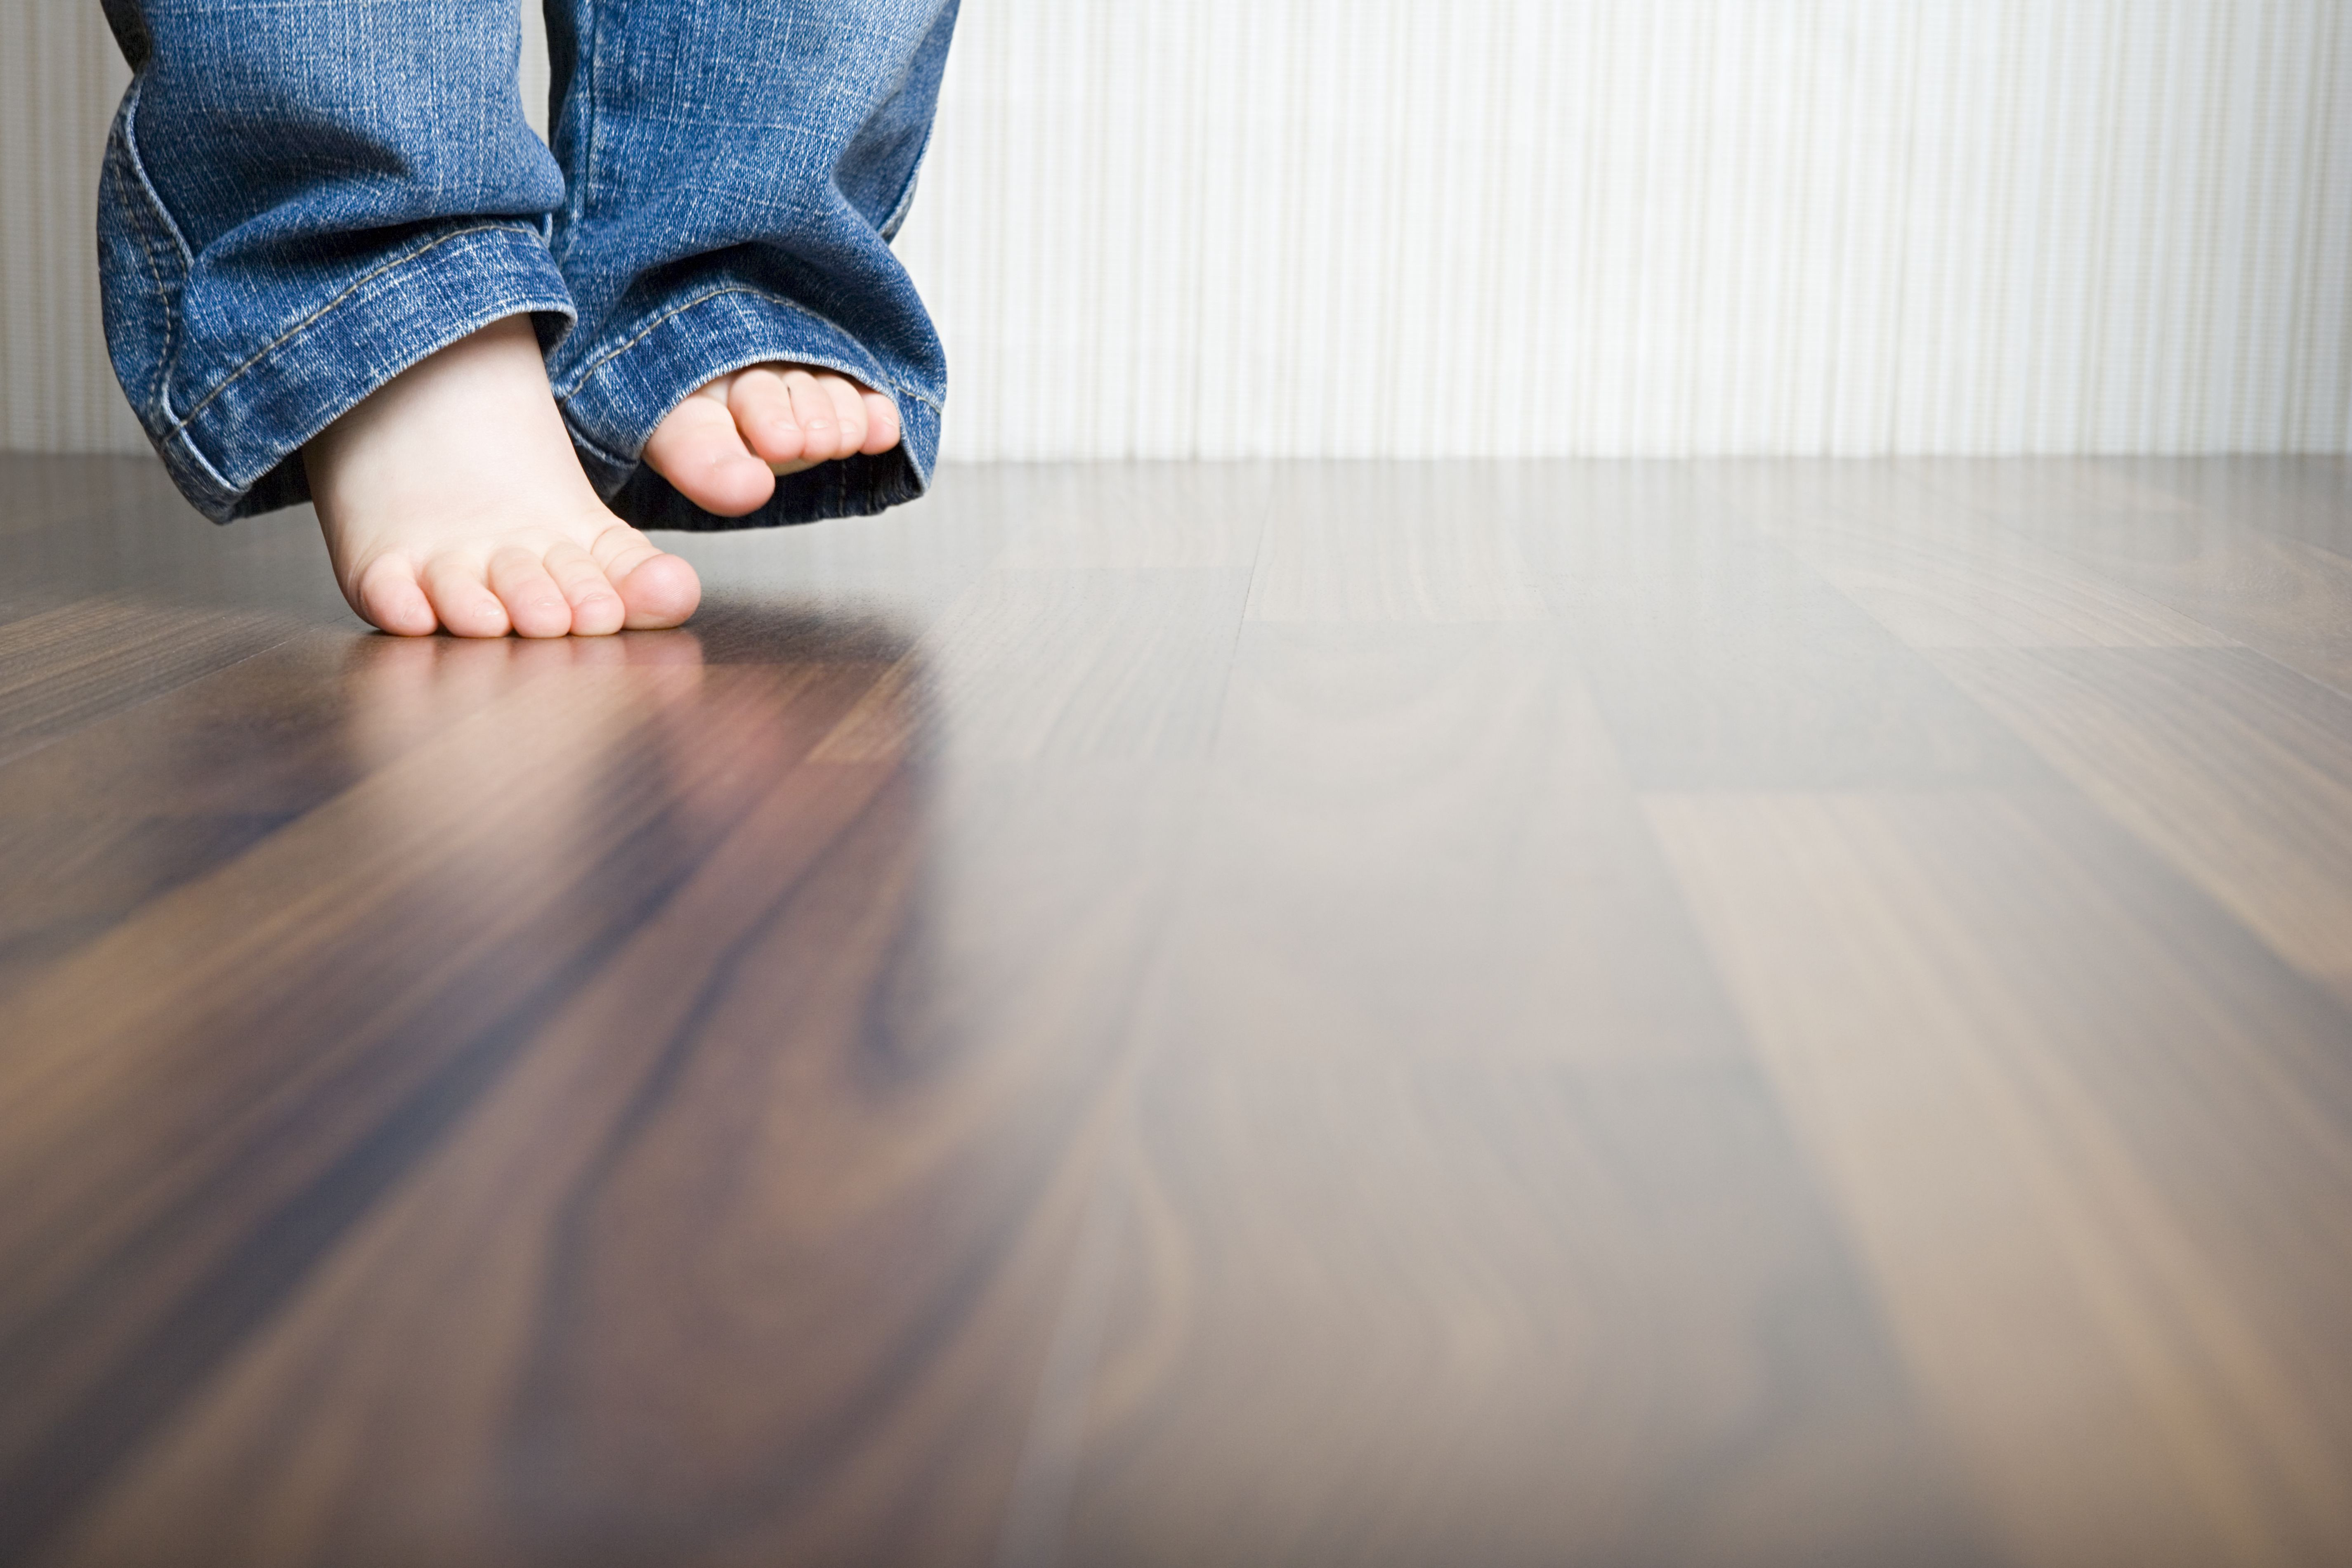 dark hardwood floor scratch repair of how to clean hardwood floors best way to clean wood flooring in 1512149908 gettyimages 75403973